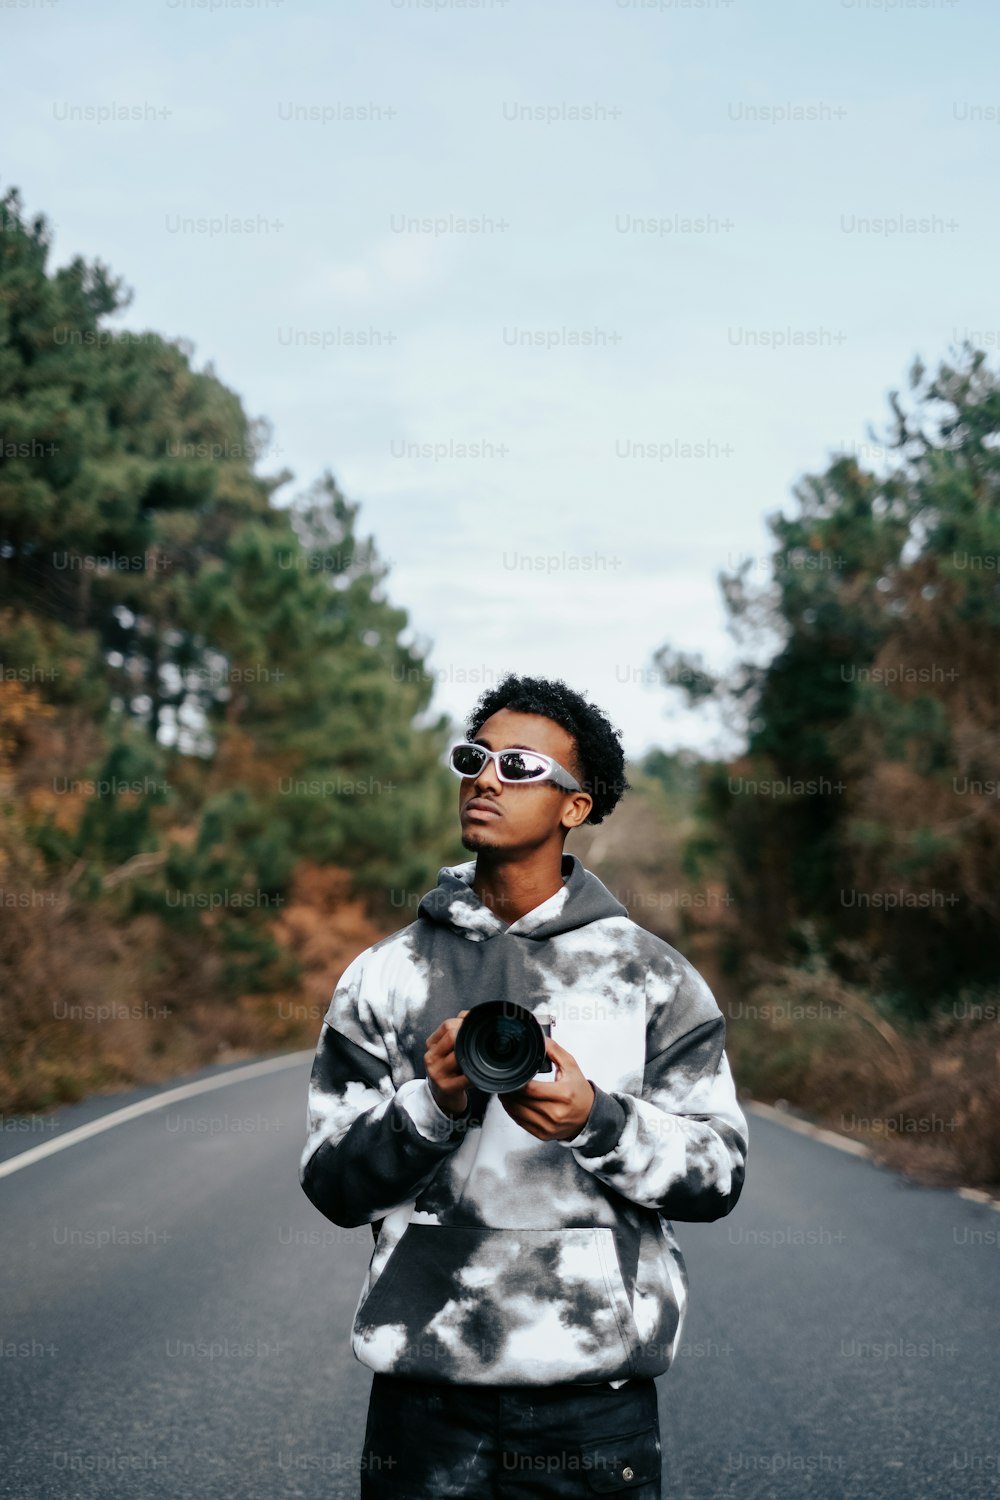 Un homme debout sur le bord d’une route tenant une caméra